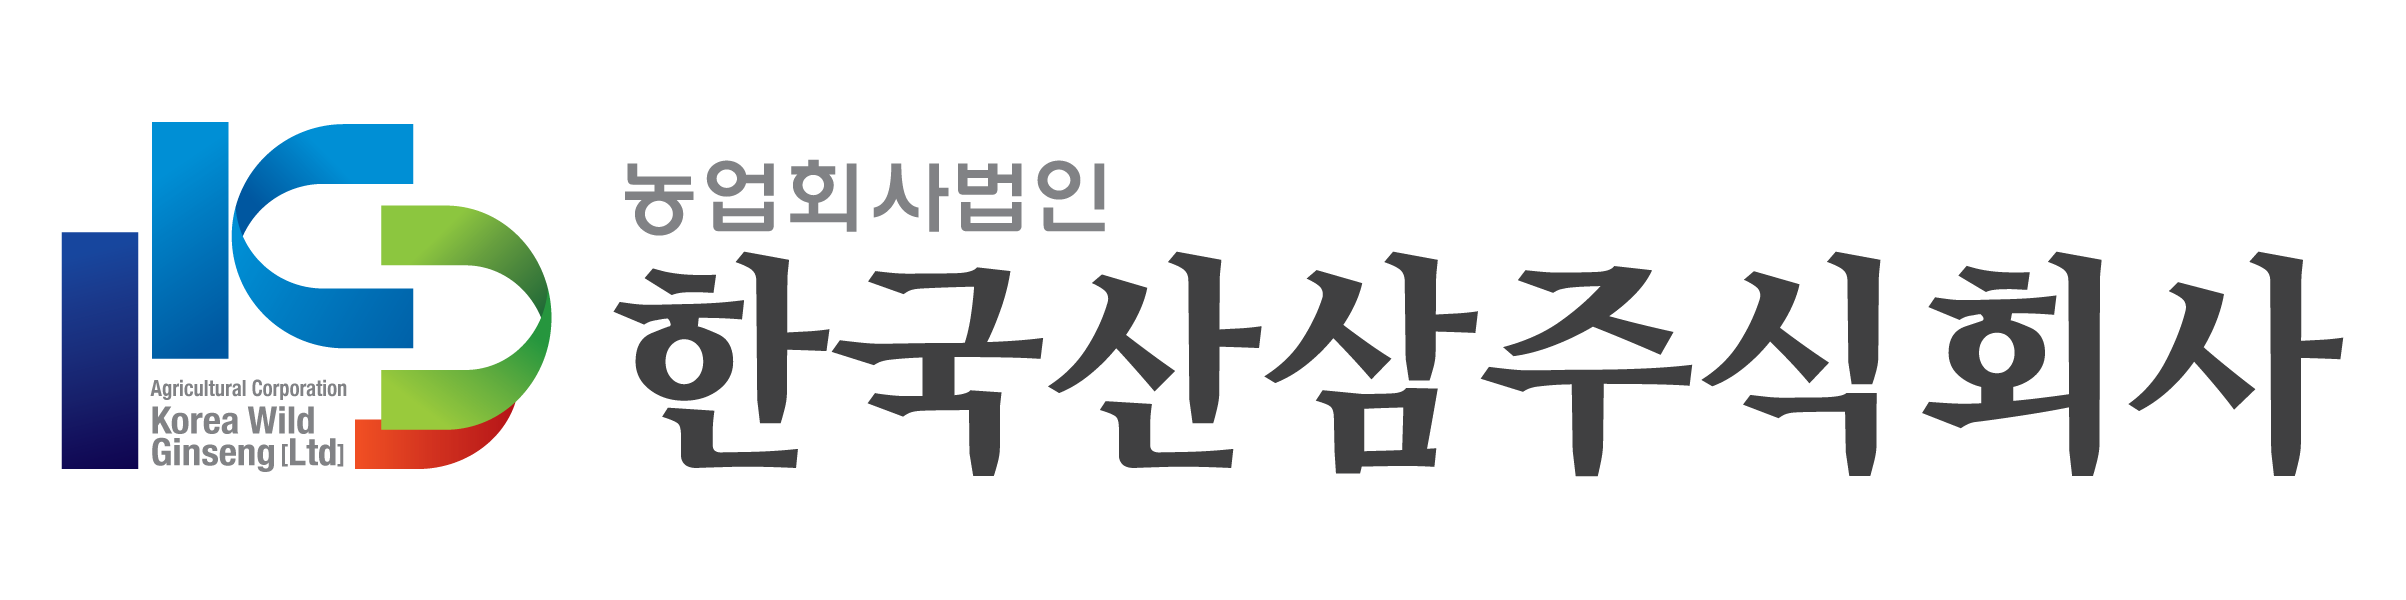 농업회사법인 한국산삼주식회사